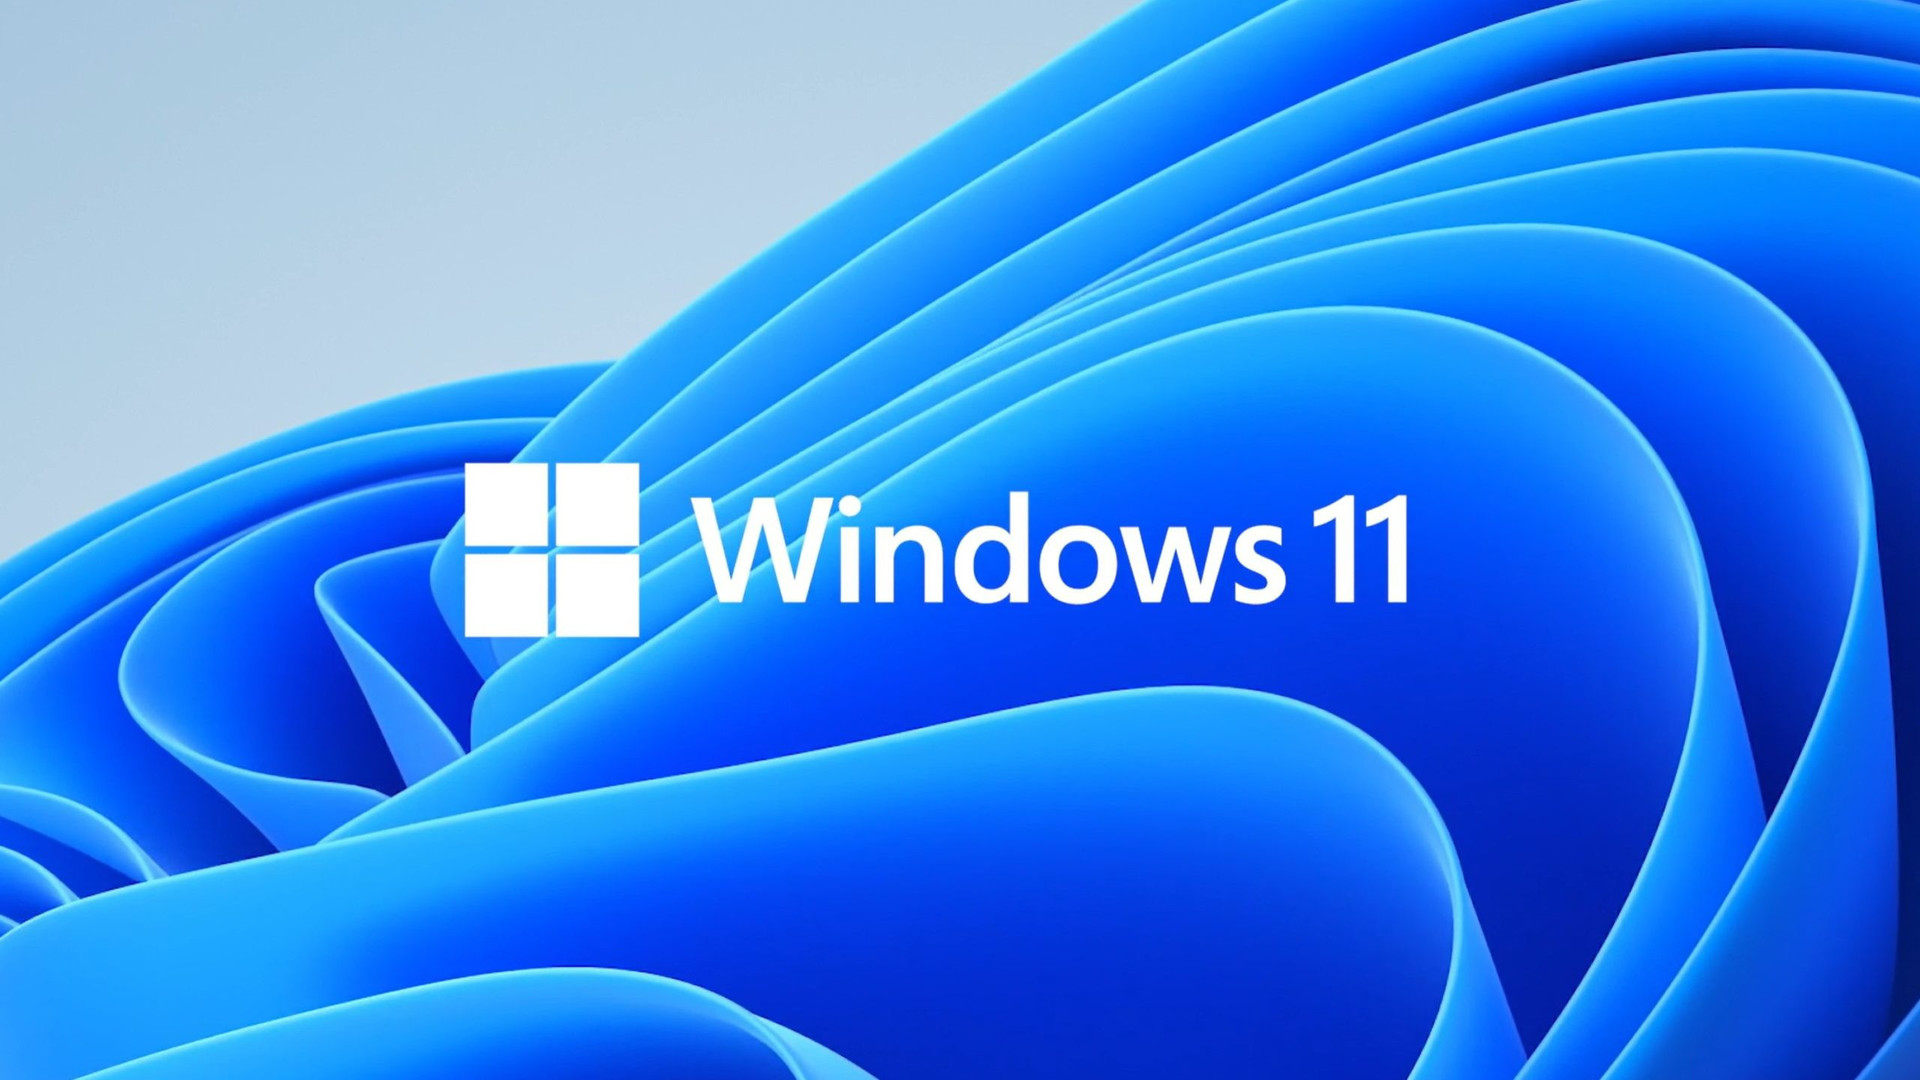 Imagen del logotipo de Windows 11